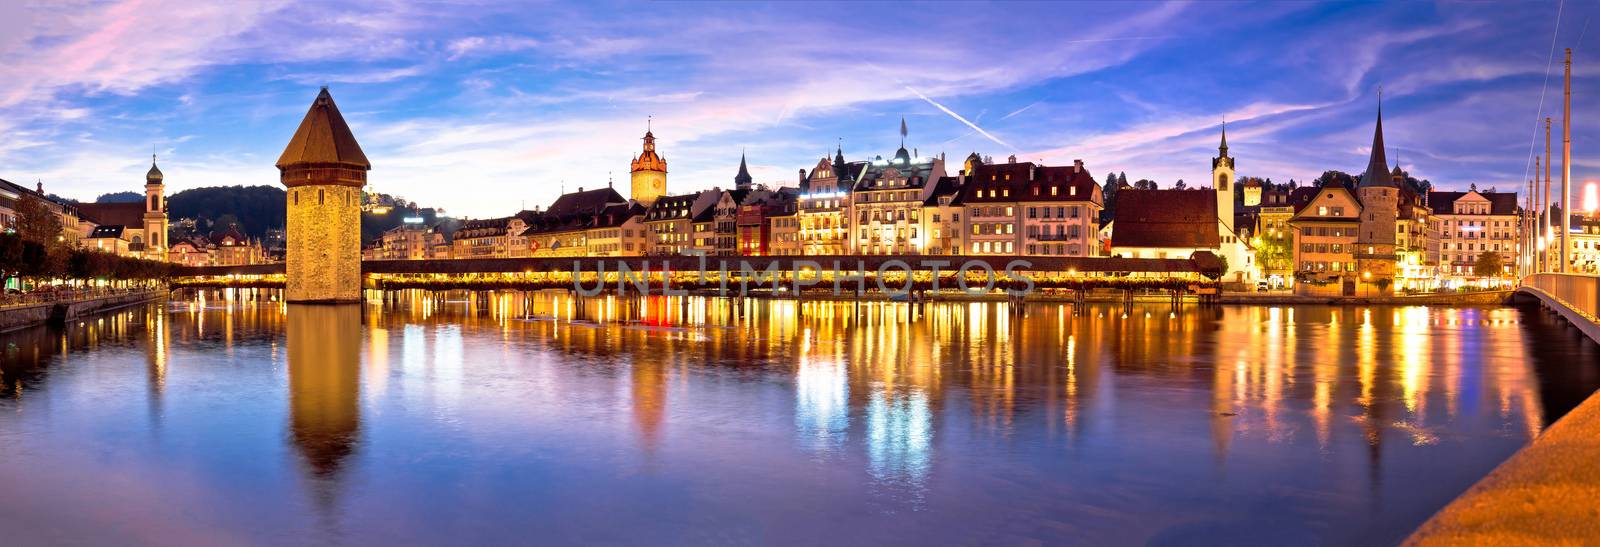 Luzern Kapelbrucke and riverfront architecture famous Swiss land by xbrchx